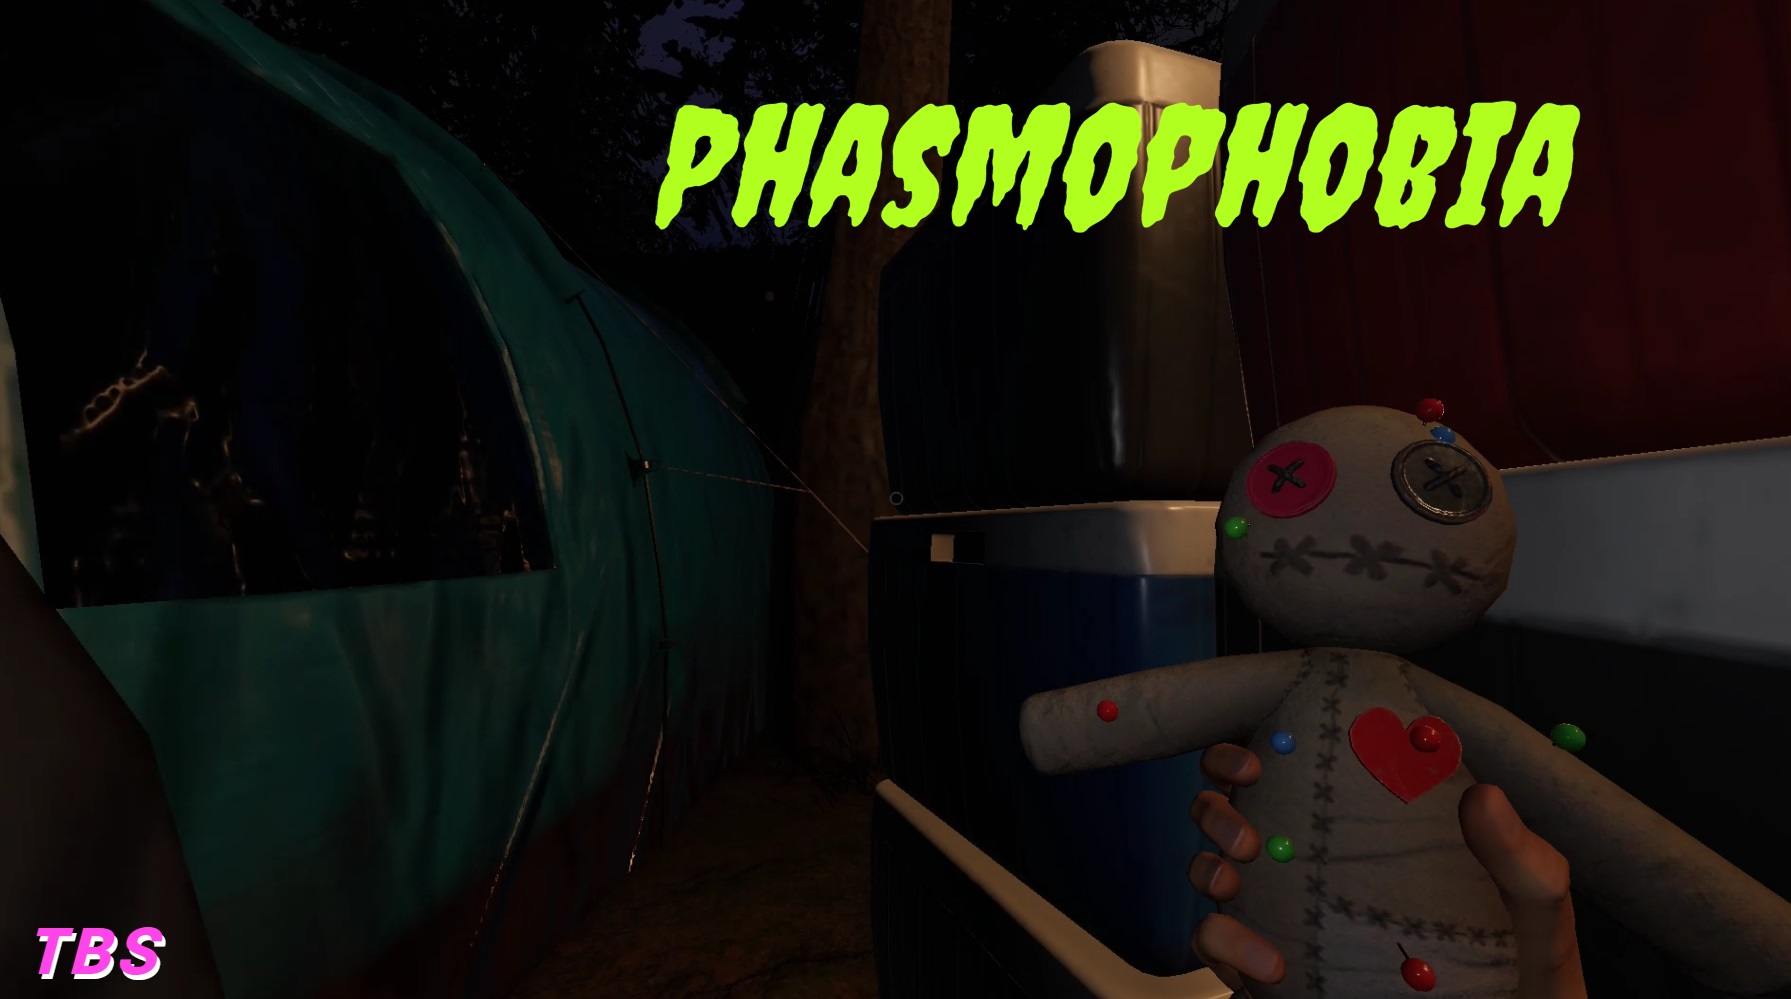 кукла вуду phasmophobia как фото 75